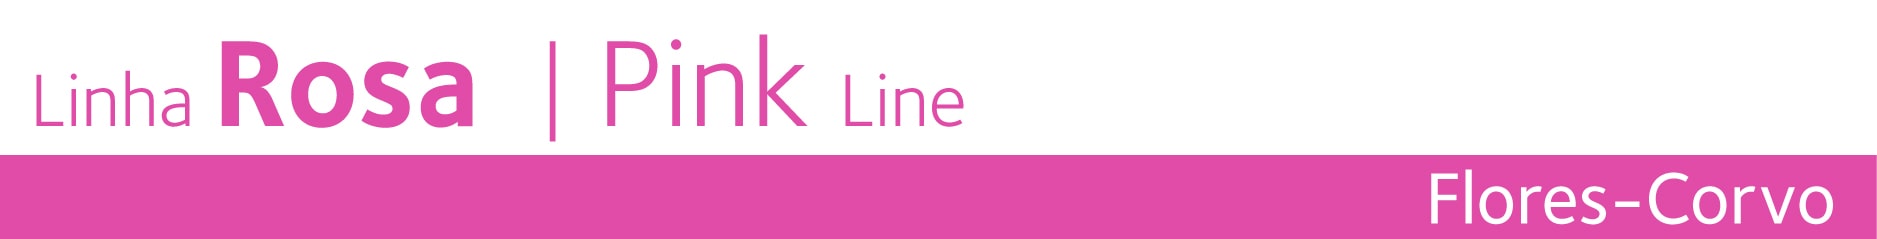 Linha Rosa - Pink Line